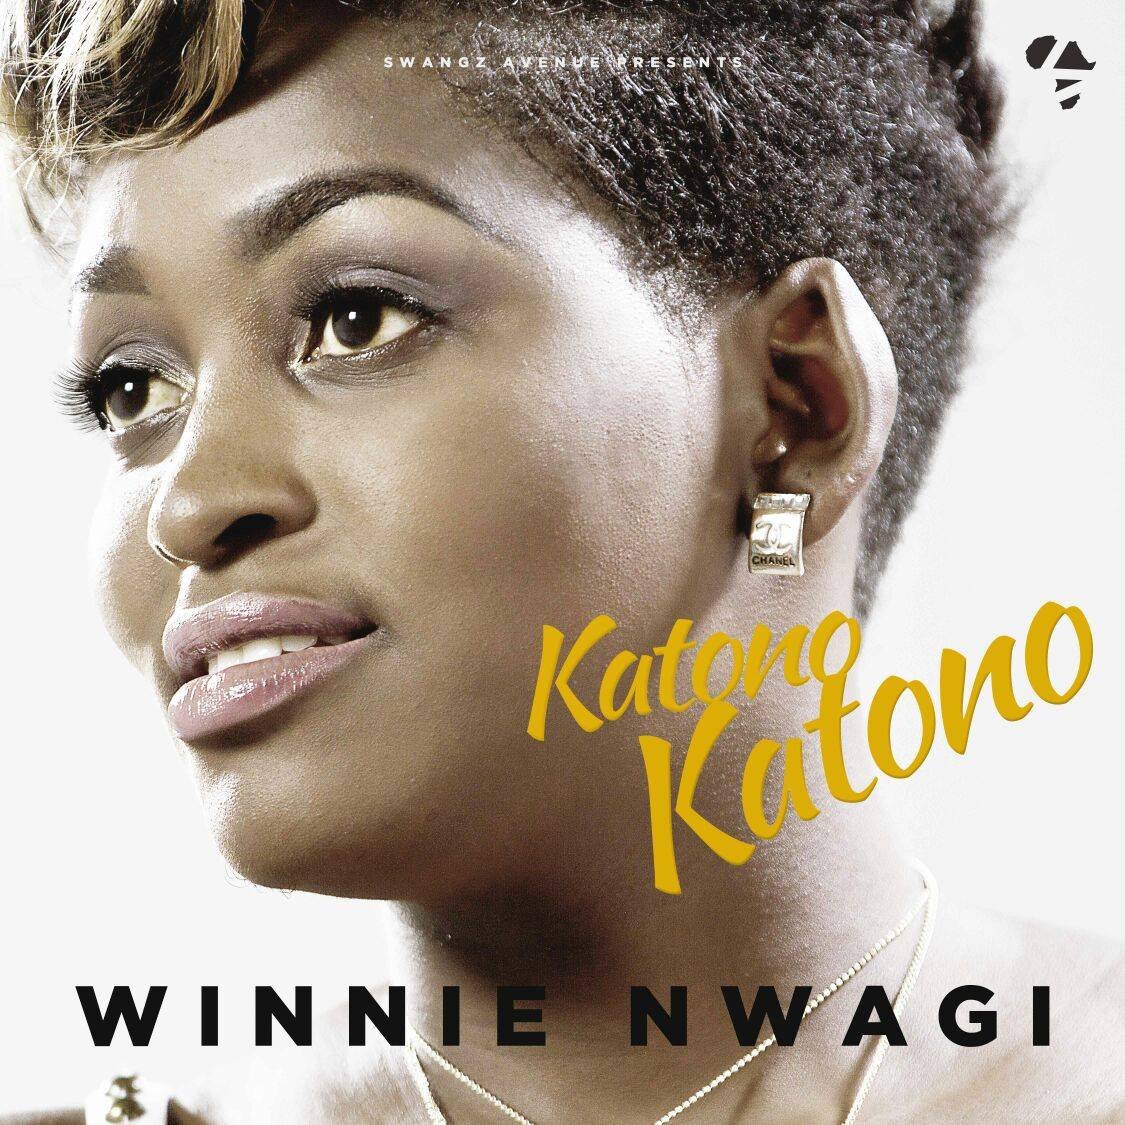 Winnie Nwagi